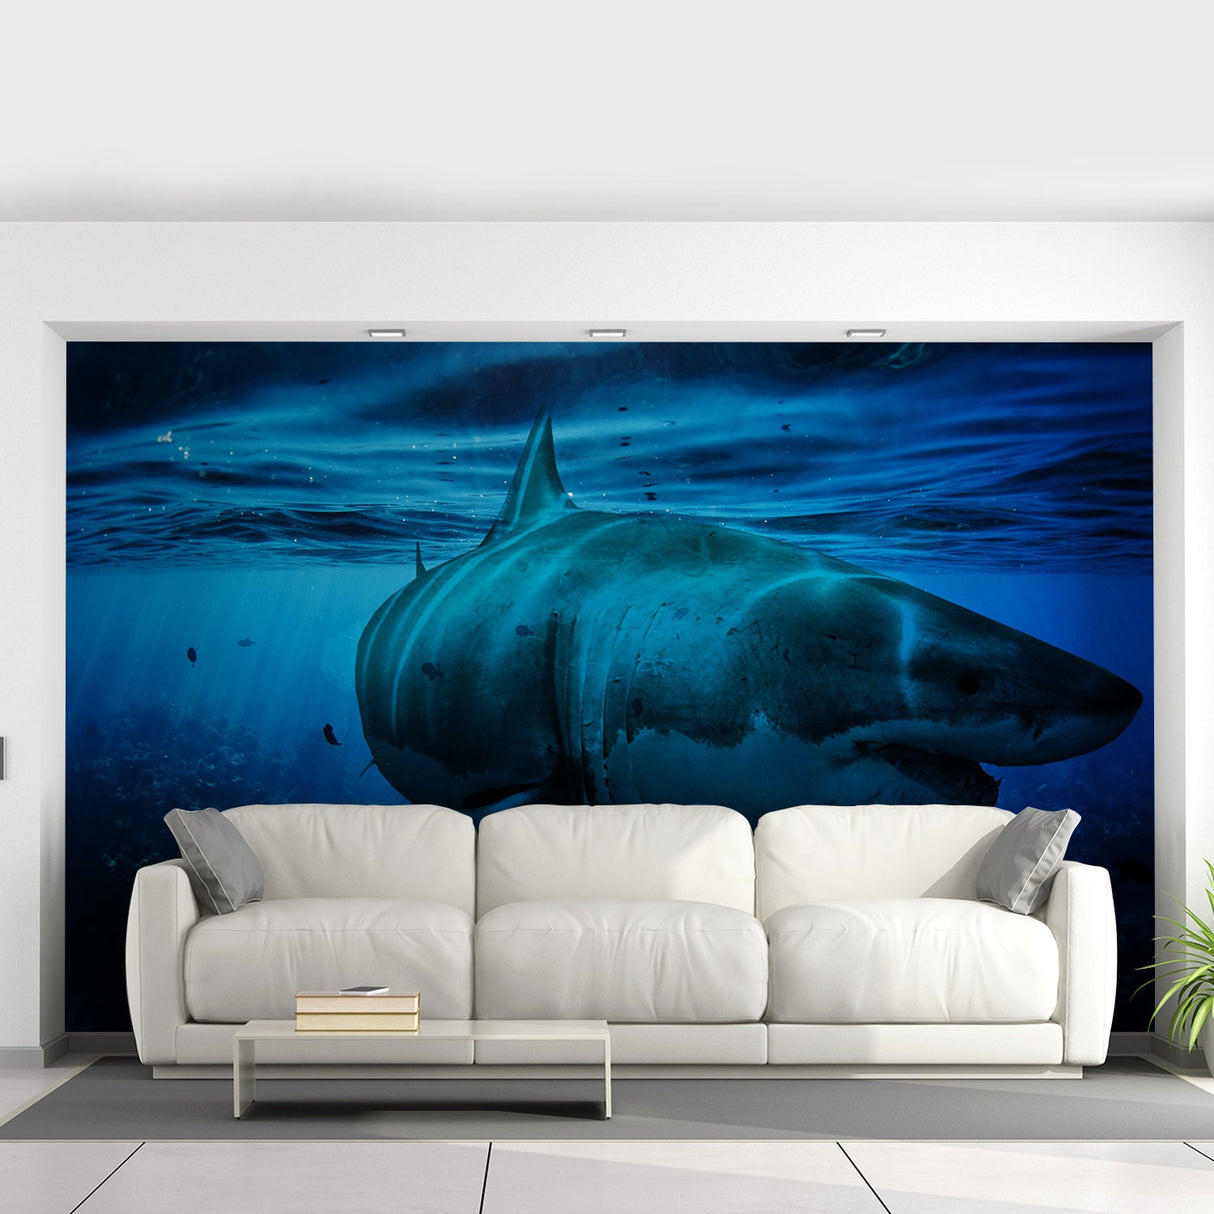 Ocean Shark Wallpaper Art Decal - Underwater 3d Decor Wall Paper Removable Sticker